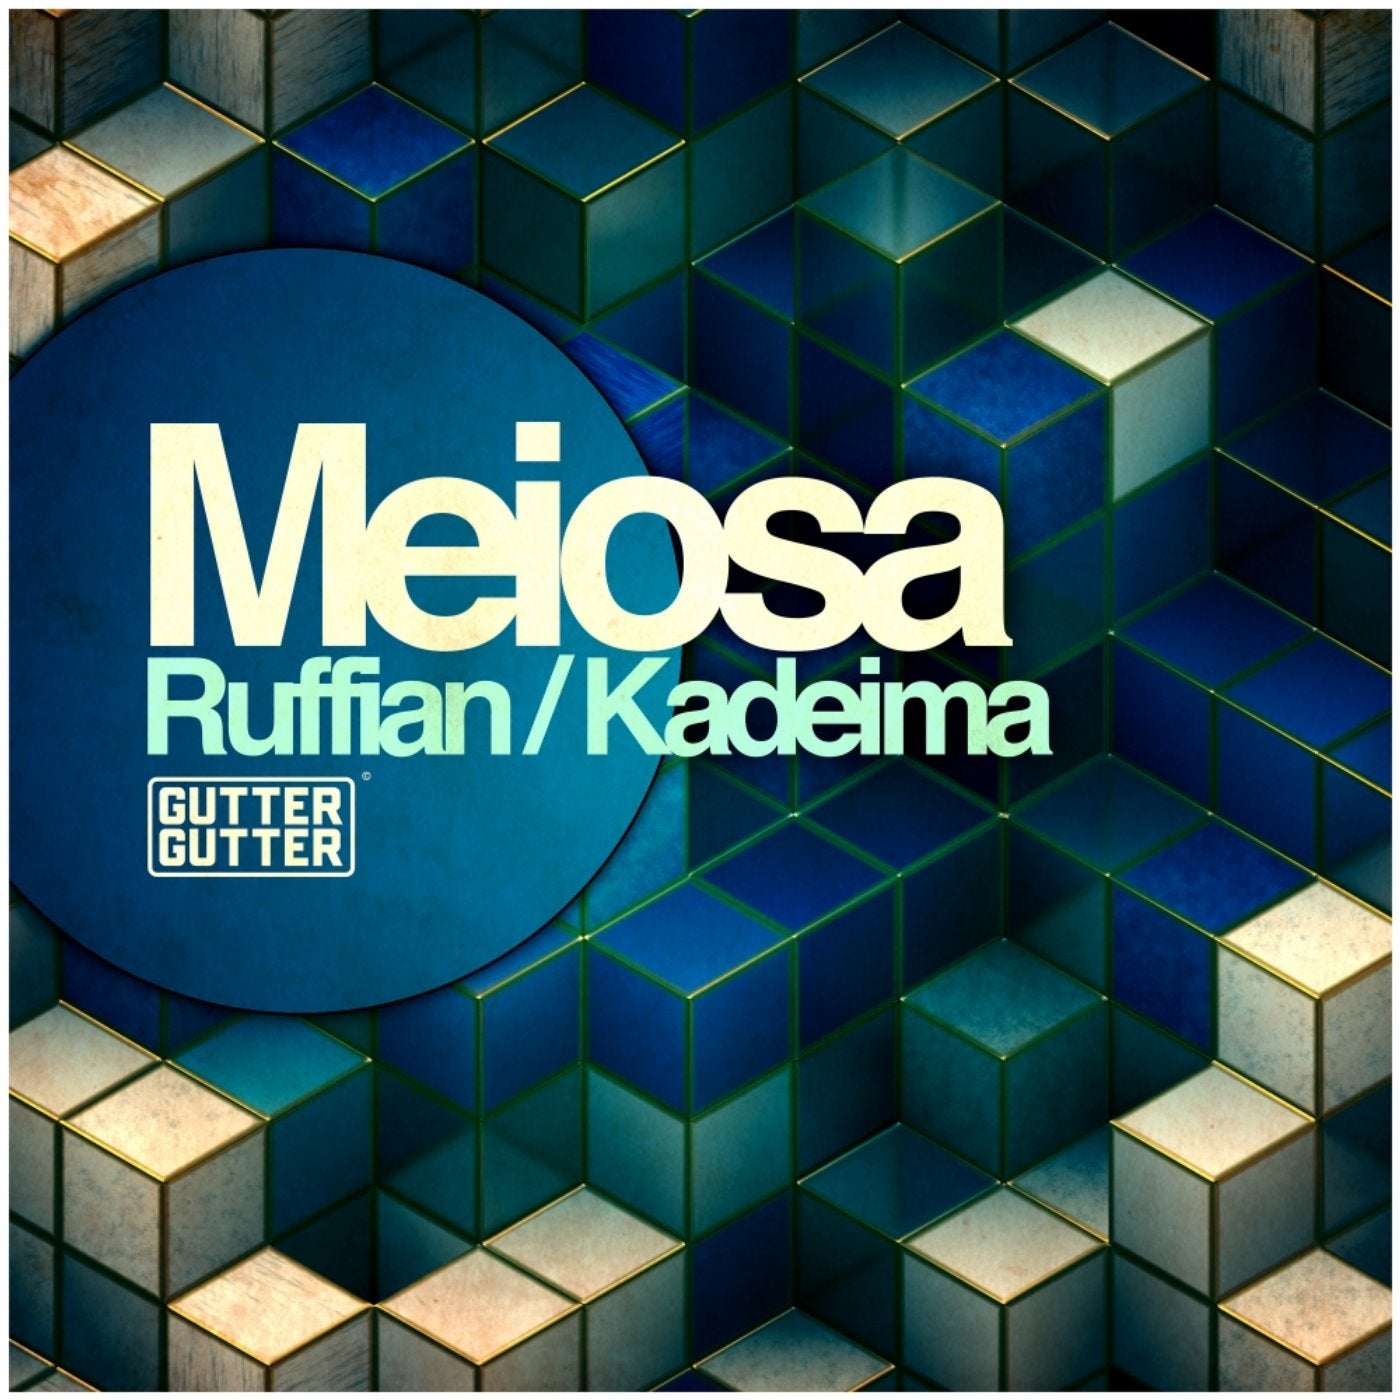 Ruffian / Kadeima